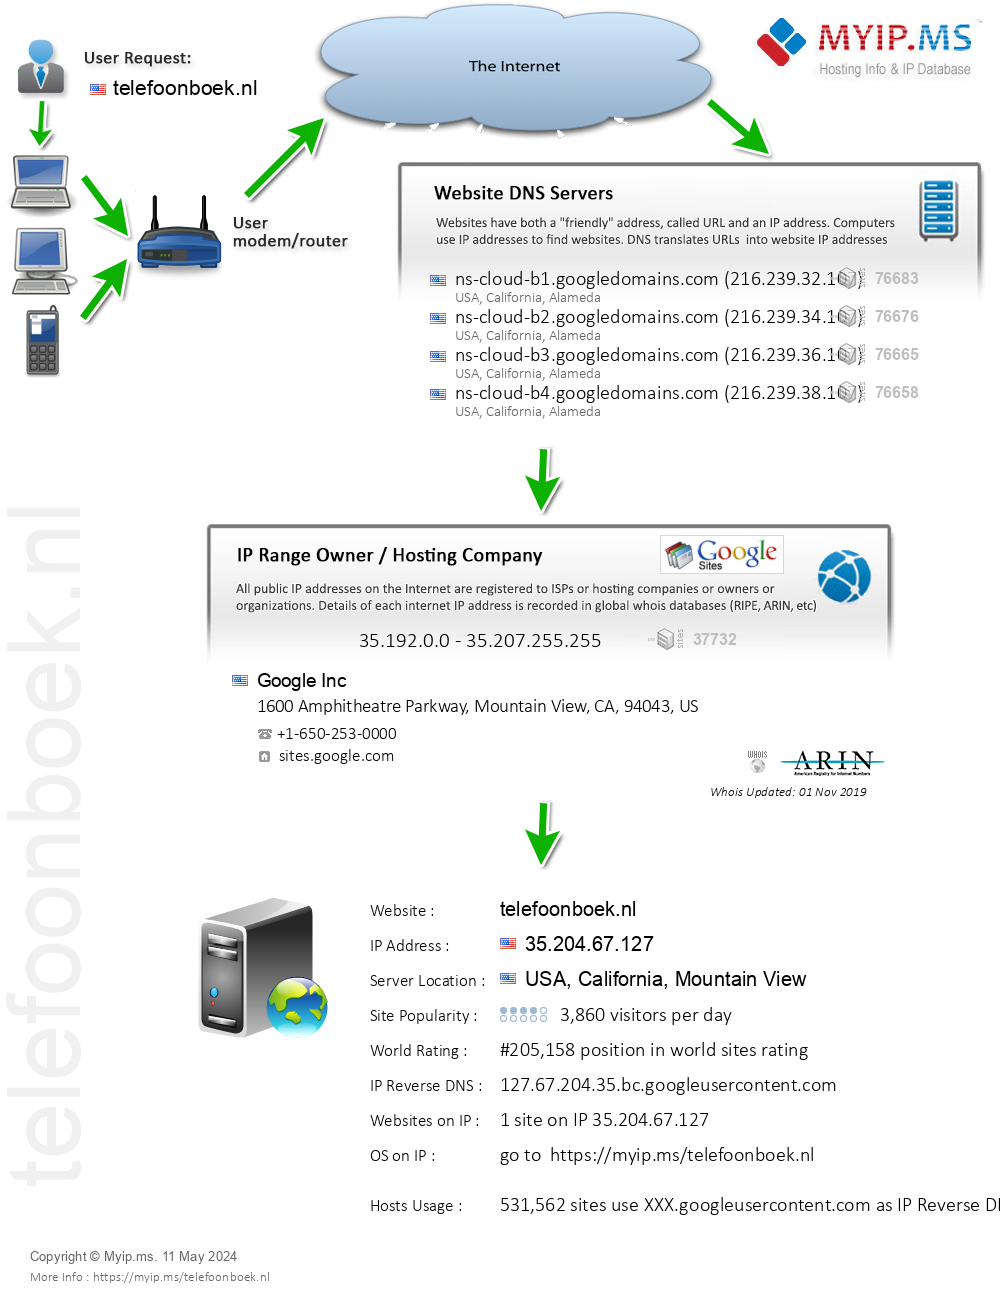 Telefoonboek.nl - Website Hosting Visual IP Diagram